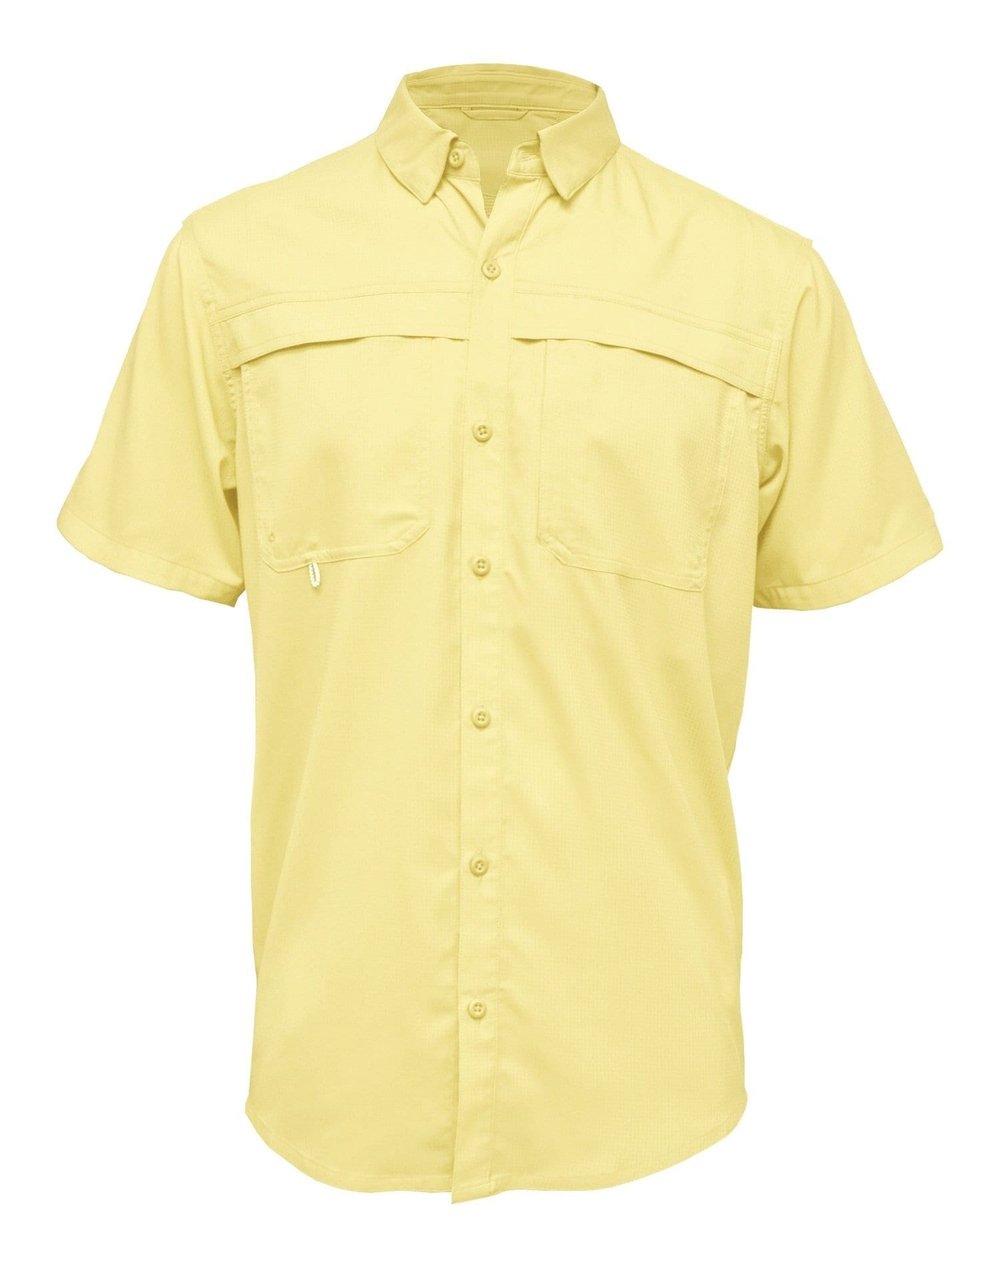 Fishing Shirt, Sublimation Fishing Shirt, Blank Shirt, Short Sleeve Fishing Shirt, Shirt for Him, Men's Fishing Shirt